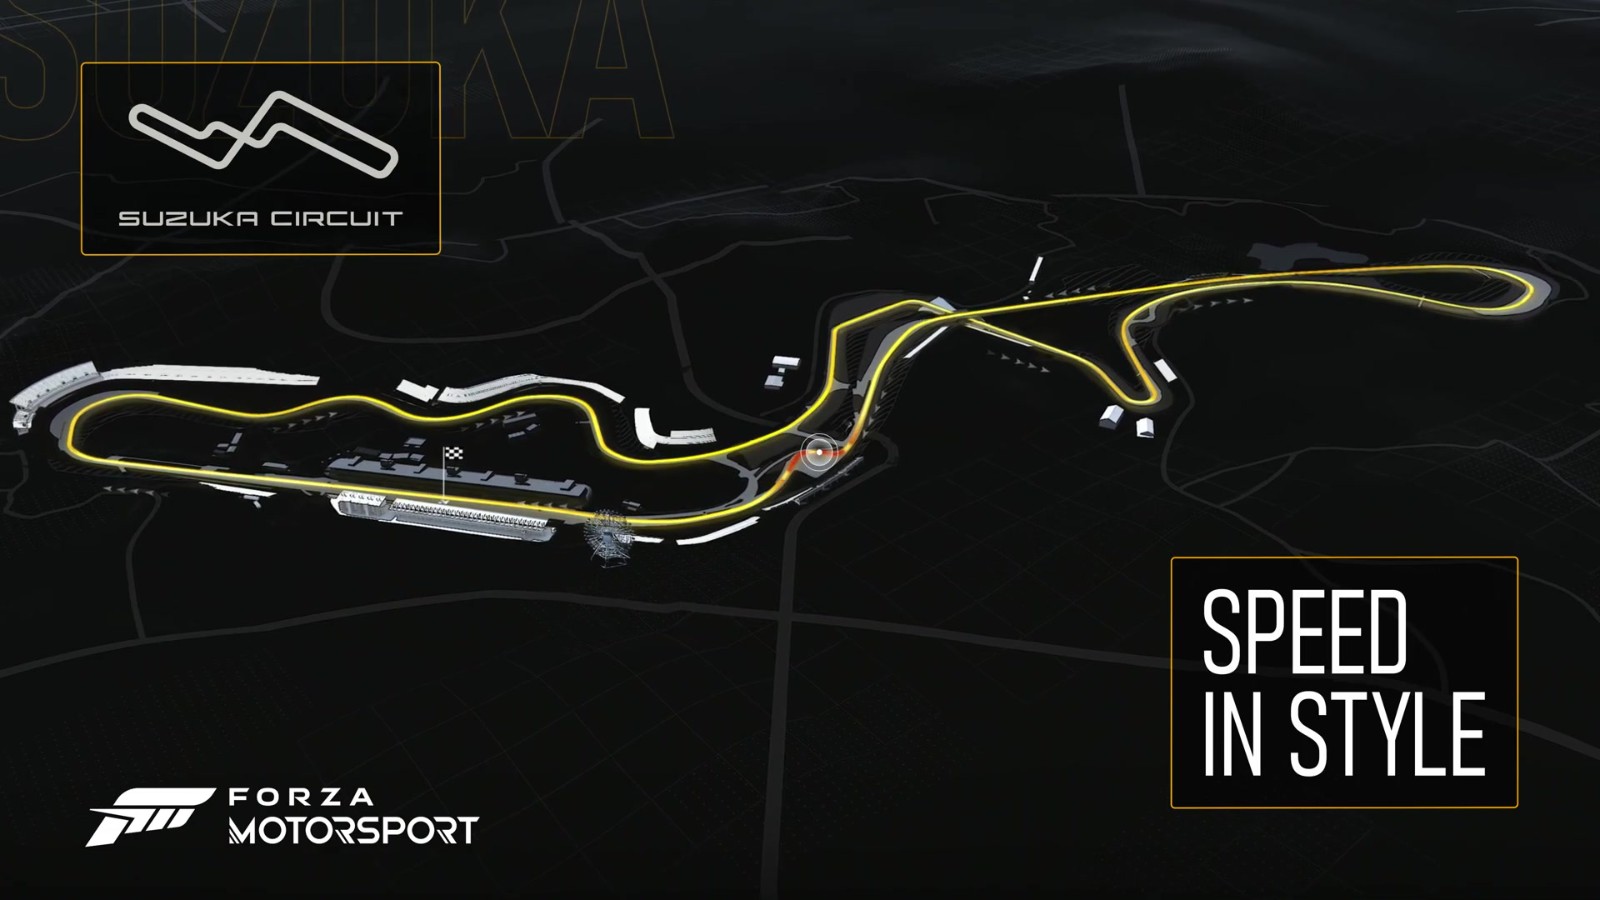 《极限竞速：Motorsport》新预告片展示铃鹿赛道